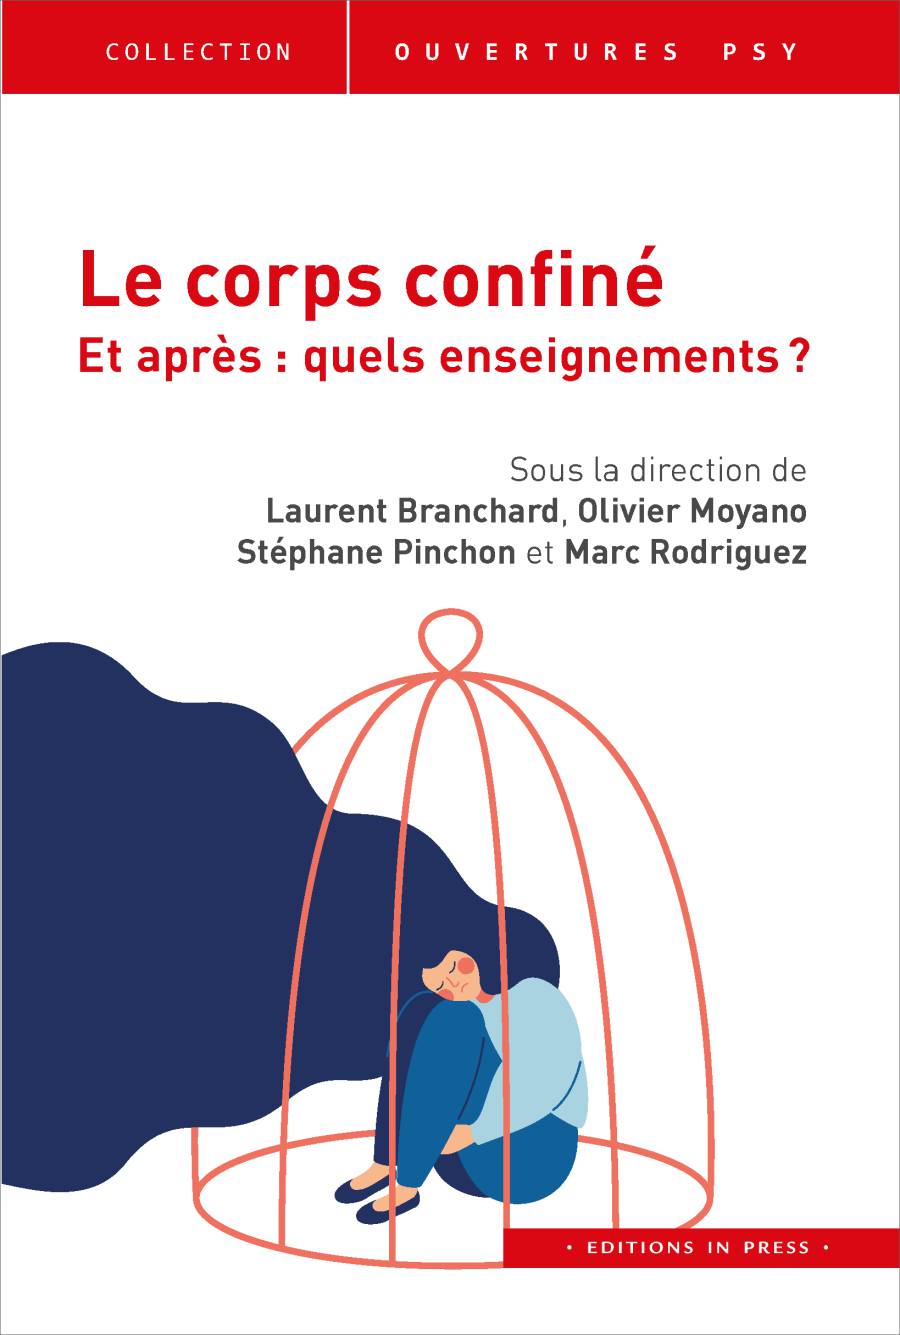 Le corps confiné - Et après : Quels enseignements? Sous la direction de Laurent Branchard, Olivier Moyano, Stéphane Pinchon, et Marc Rodriguez